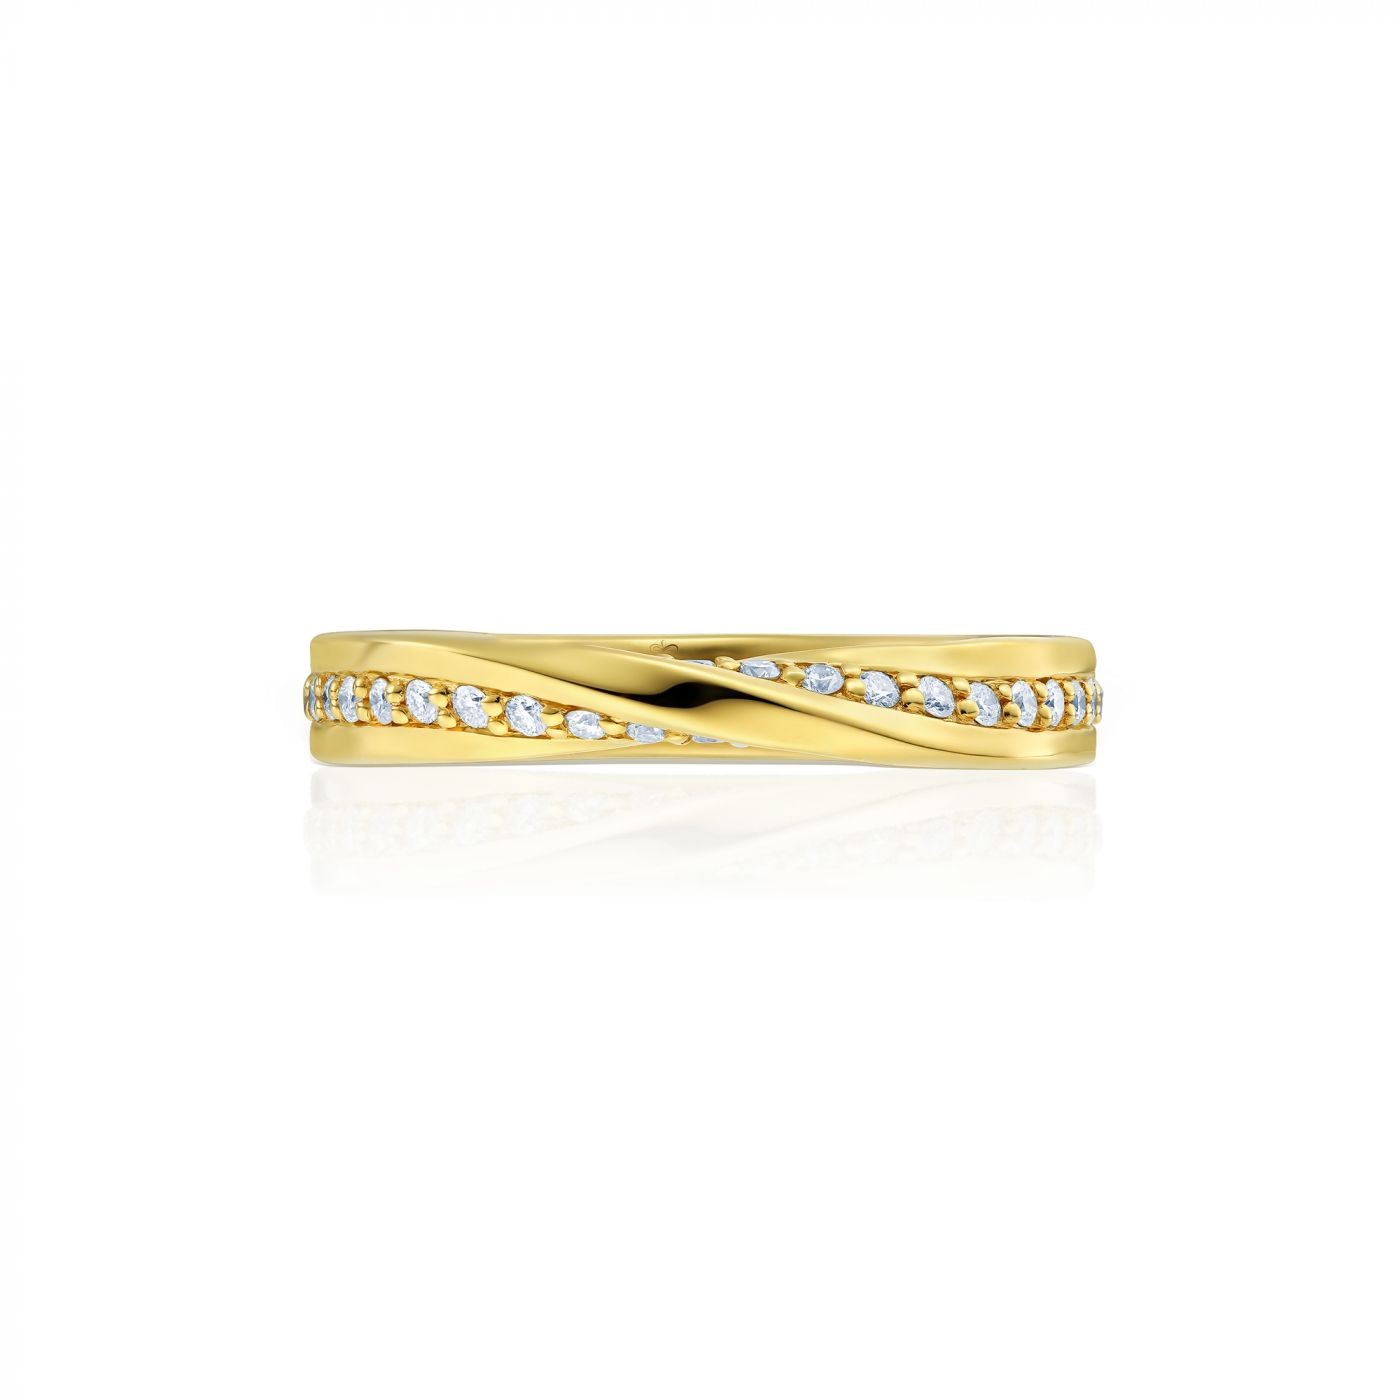 Inel Mobius - Petite din aur galben 18K cu diamante